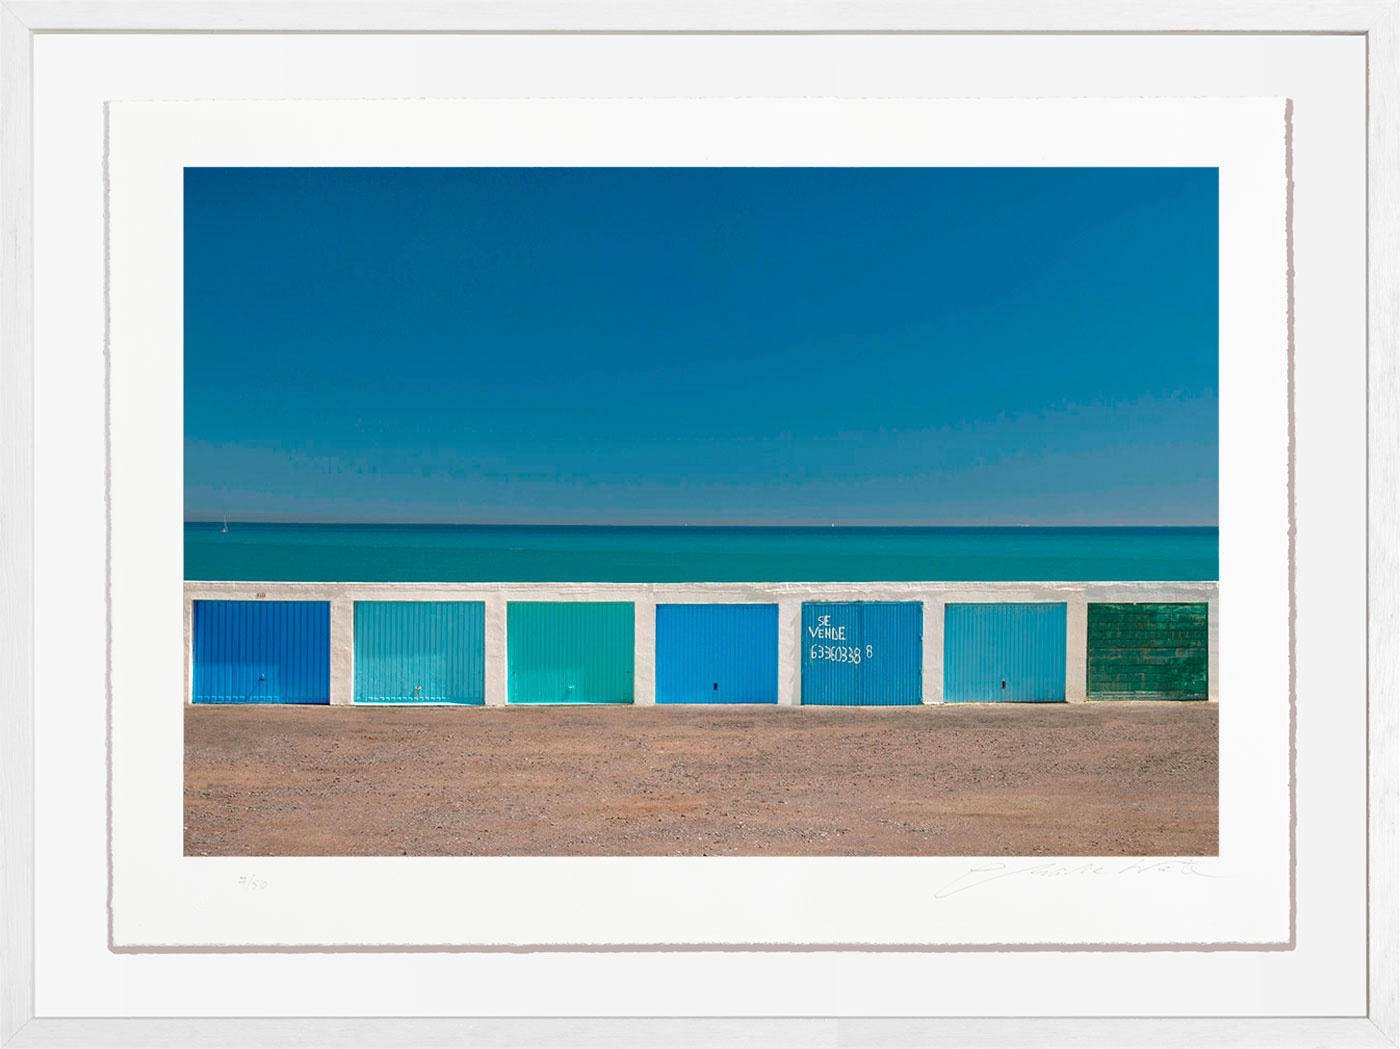 east-of-gibraltar-spain-2017-by-charlie-waite-fine-art-print-framed-for-sale-at-bosham-gallery